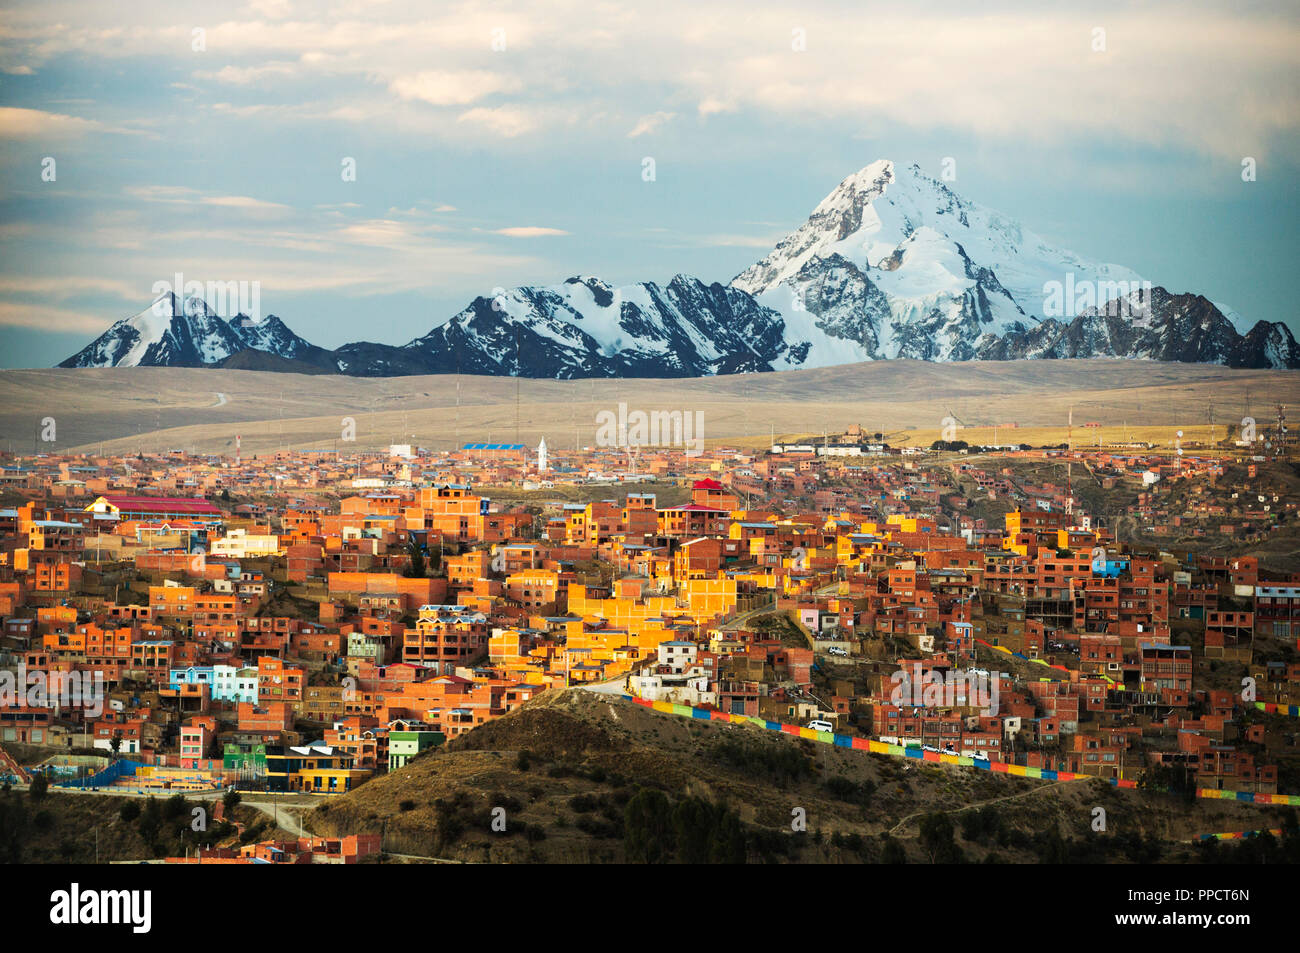 Der Berg Huayna Potosi von El Alto über La Paz, Bolivien. La Paz und El Alto wird sind kritisch, Wassermangel und wahrscheinlich die erste Hauptstadt der Welt, die wegen Mangel an Wasser weitgehend aufgegeben werden müssen. Es stützt sich auf Glazial-Schmelzwasser aus den umliegenden Gipfeln der Anden, aber wie der Klimawandel bewirkt, die Gletscher dass schmelzen, es läuft schnell Wassermangel. Stockfoto